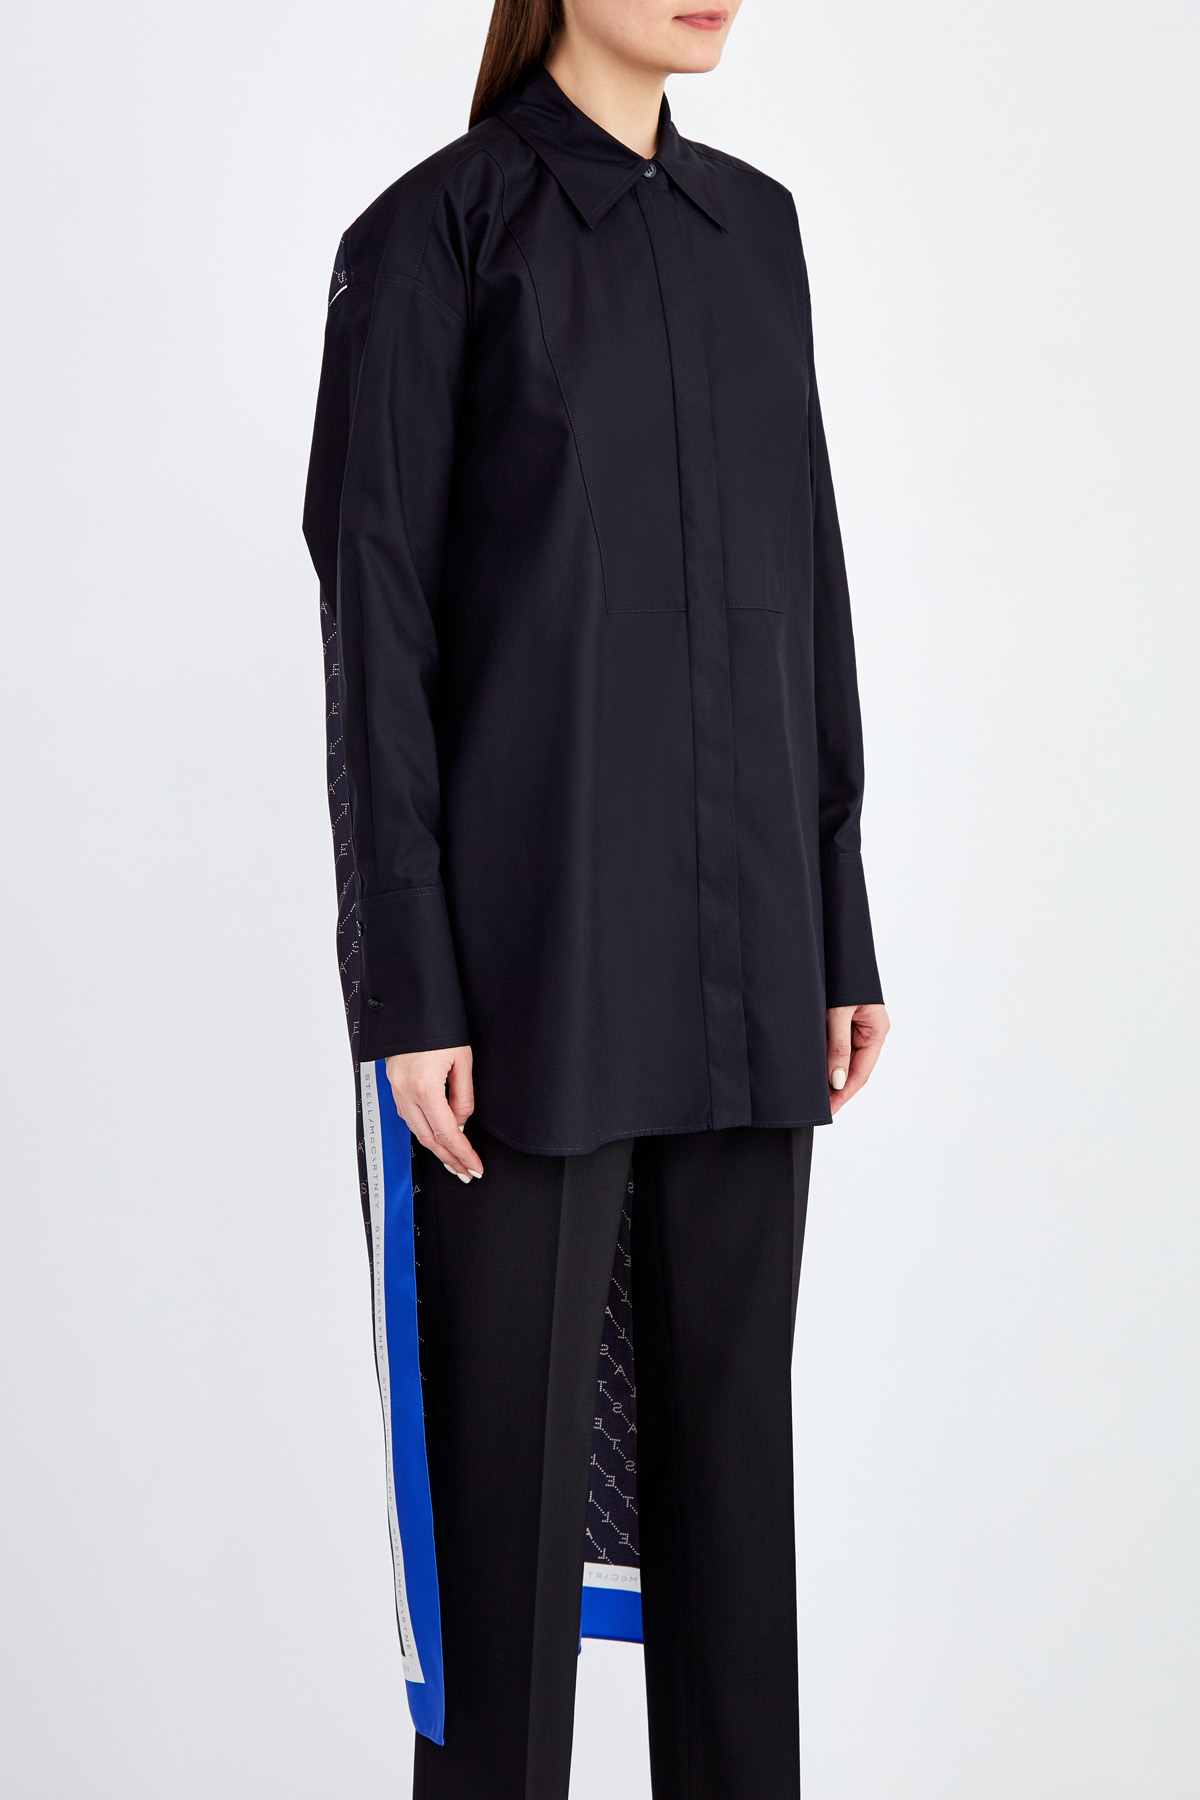 Рубашка асимметричного силуэта с удлиненным шлейфом из шелка STELLA McCARTNEY, цвет черный, размер XS - фото 3